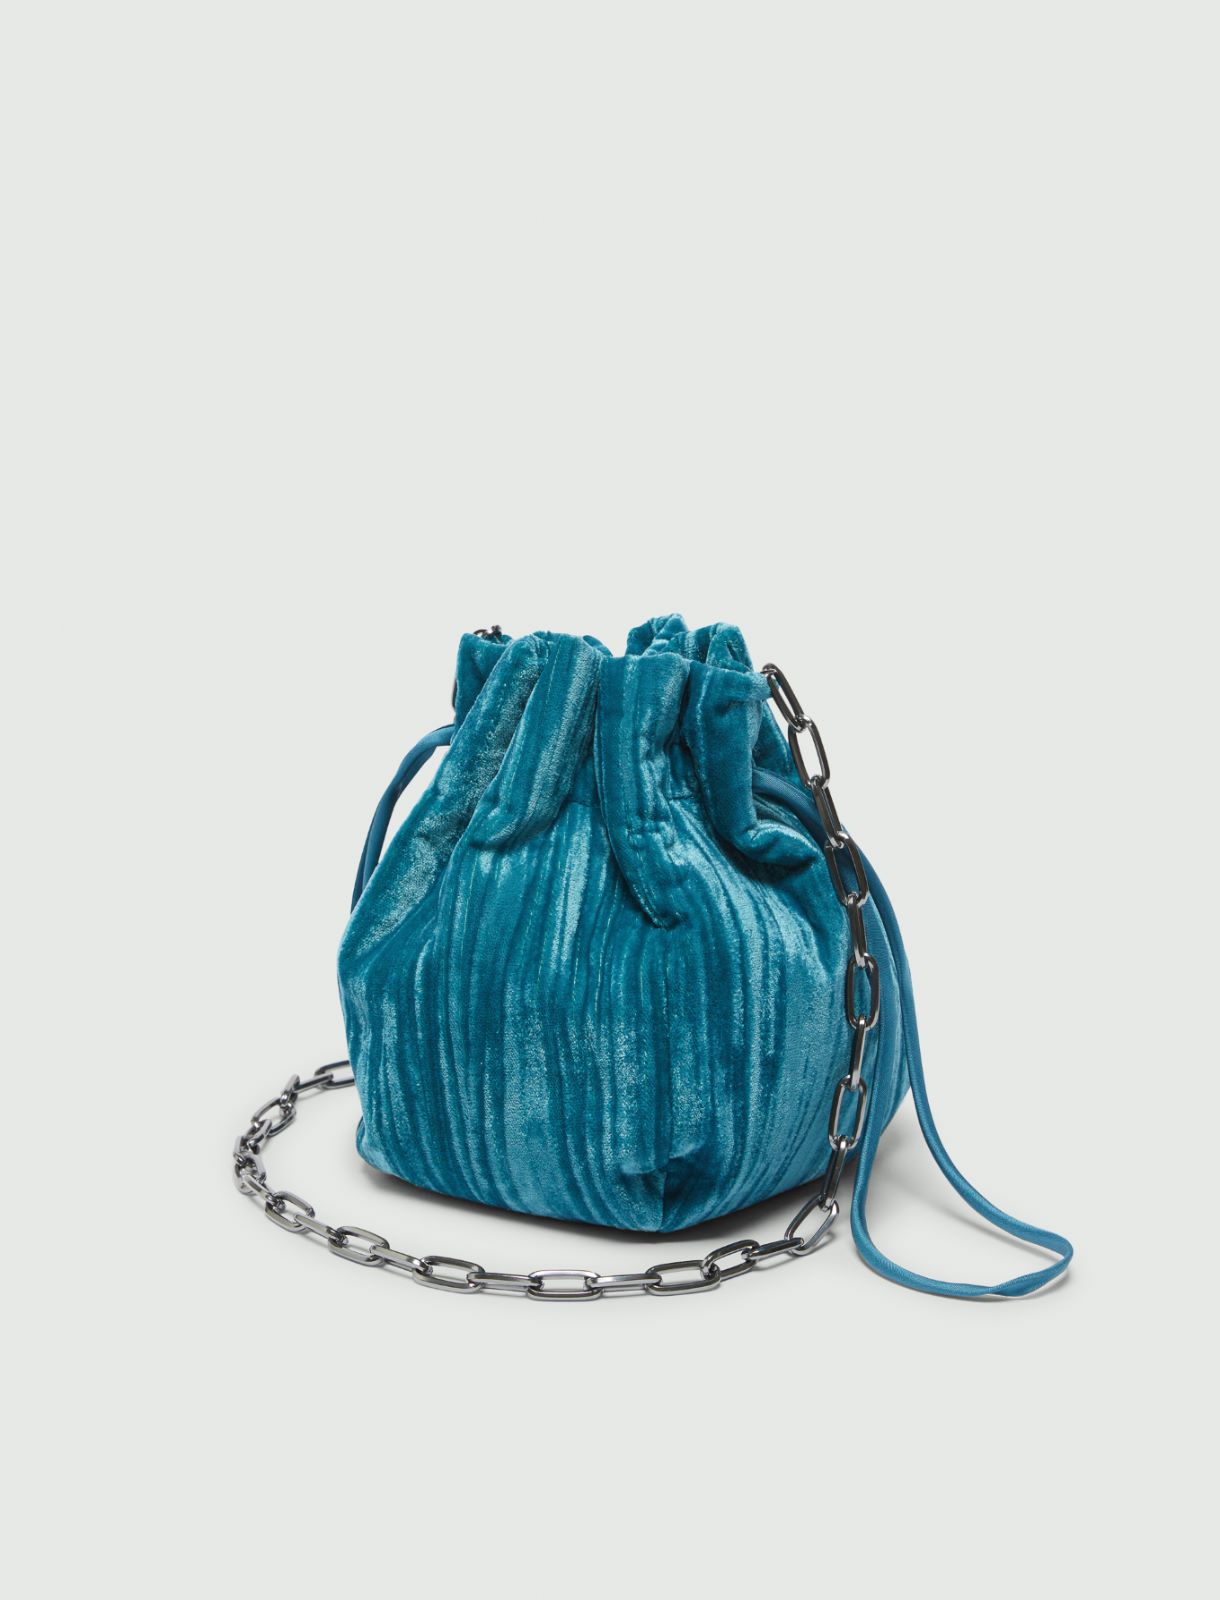 Velvet bag - Peacock blue - Marella - 2